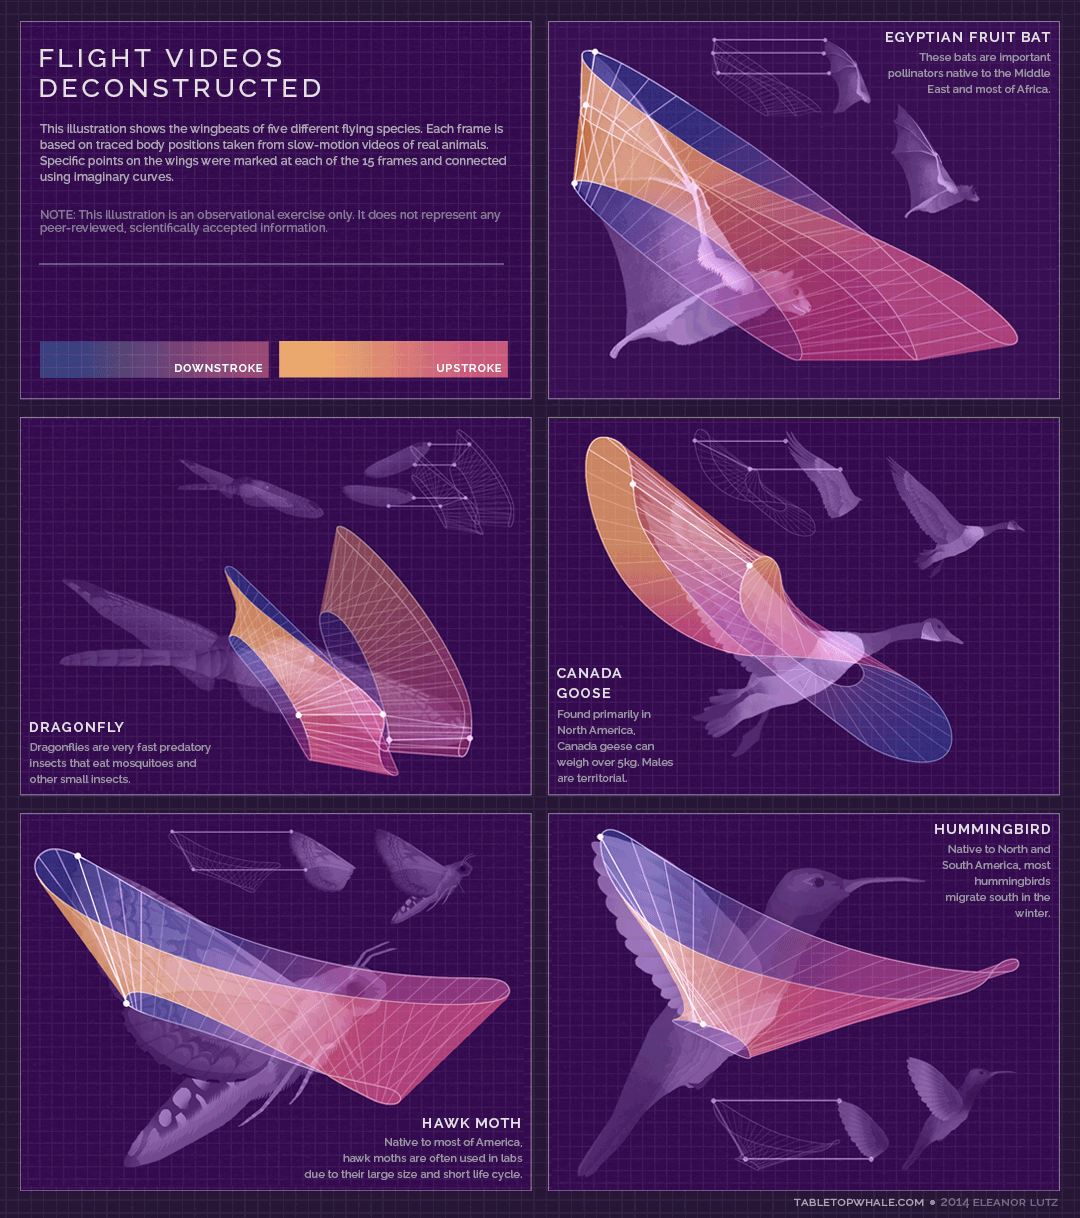 Физика в мире животных: колибри и ее полет…